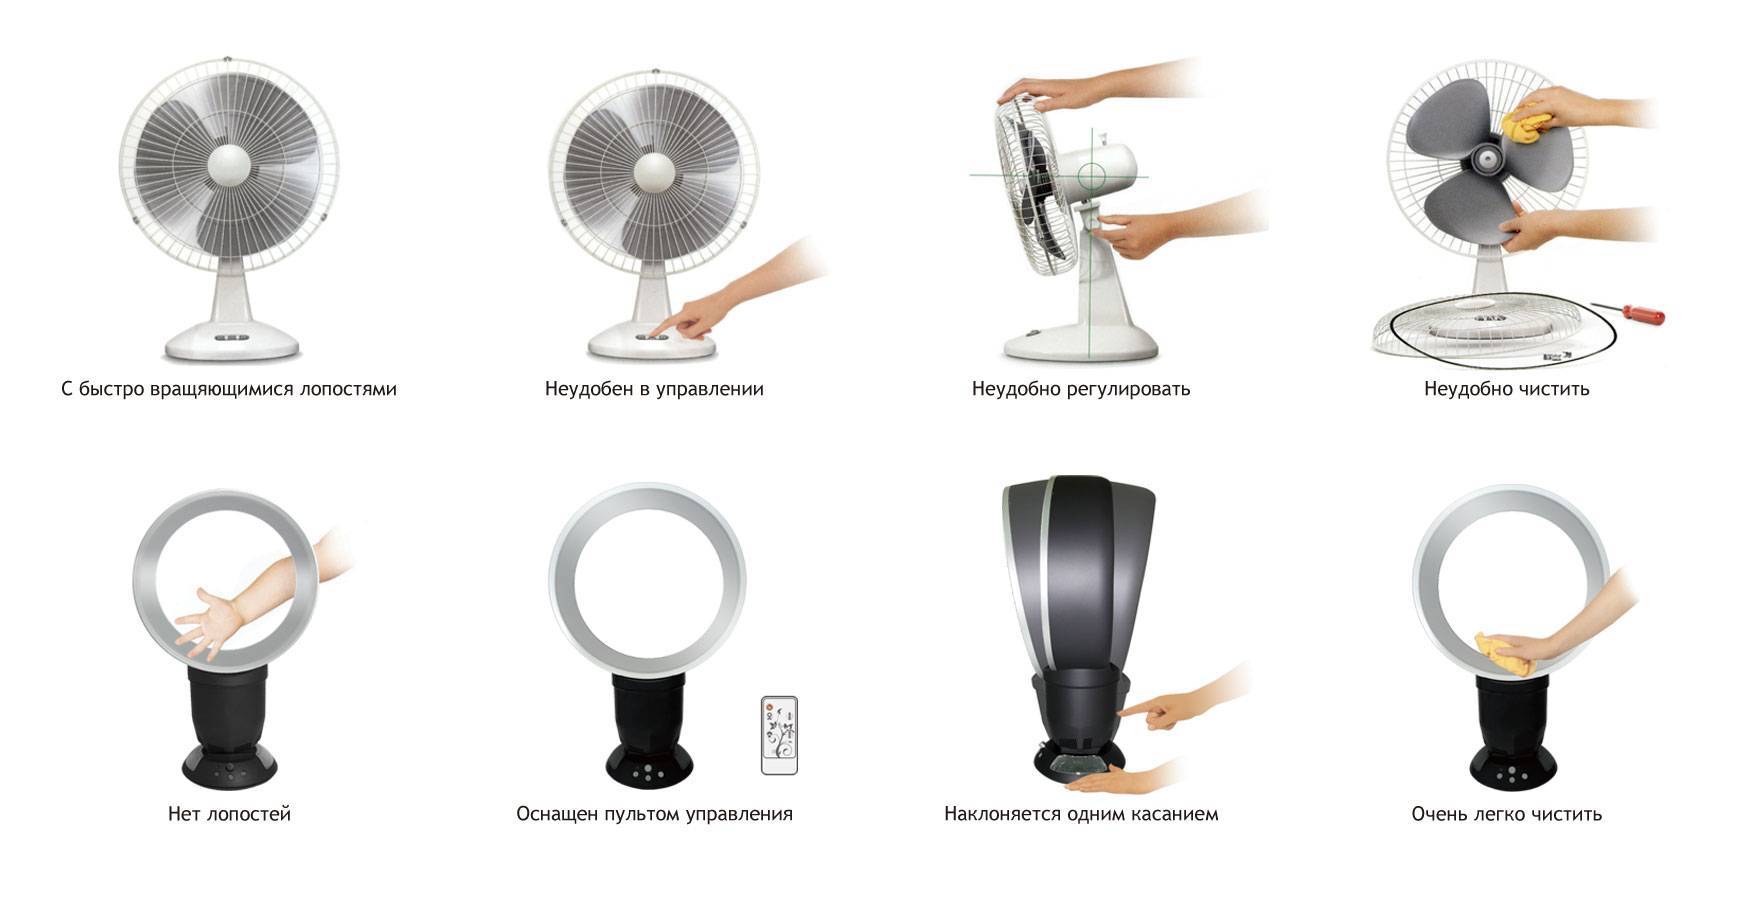 Безлопастной вентилятор: принцип работы и преимущества - точка j